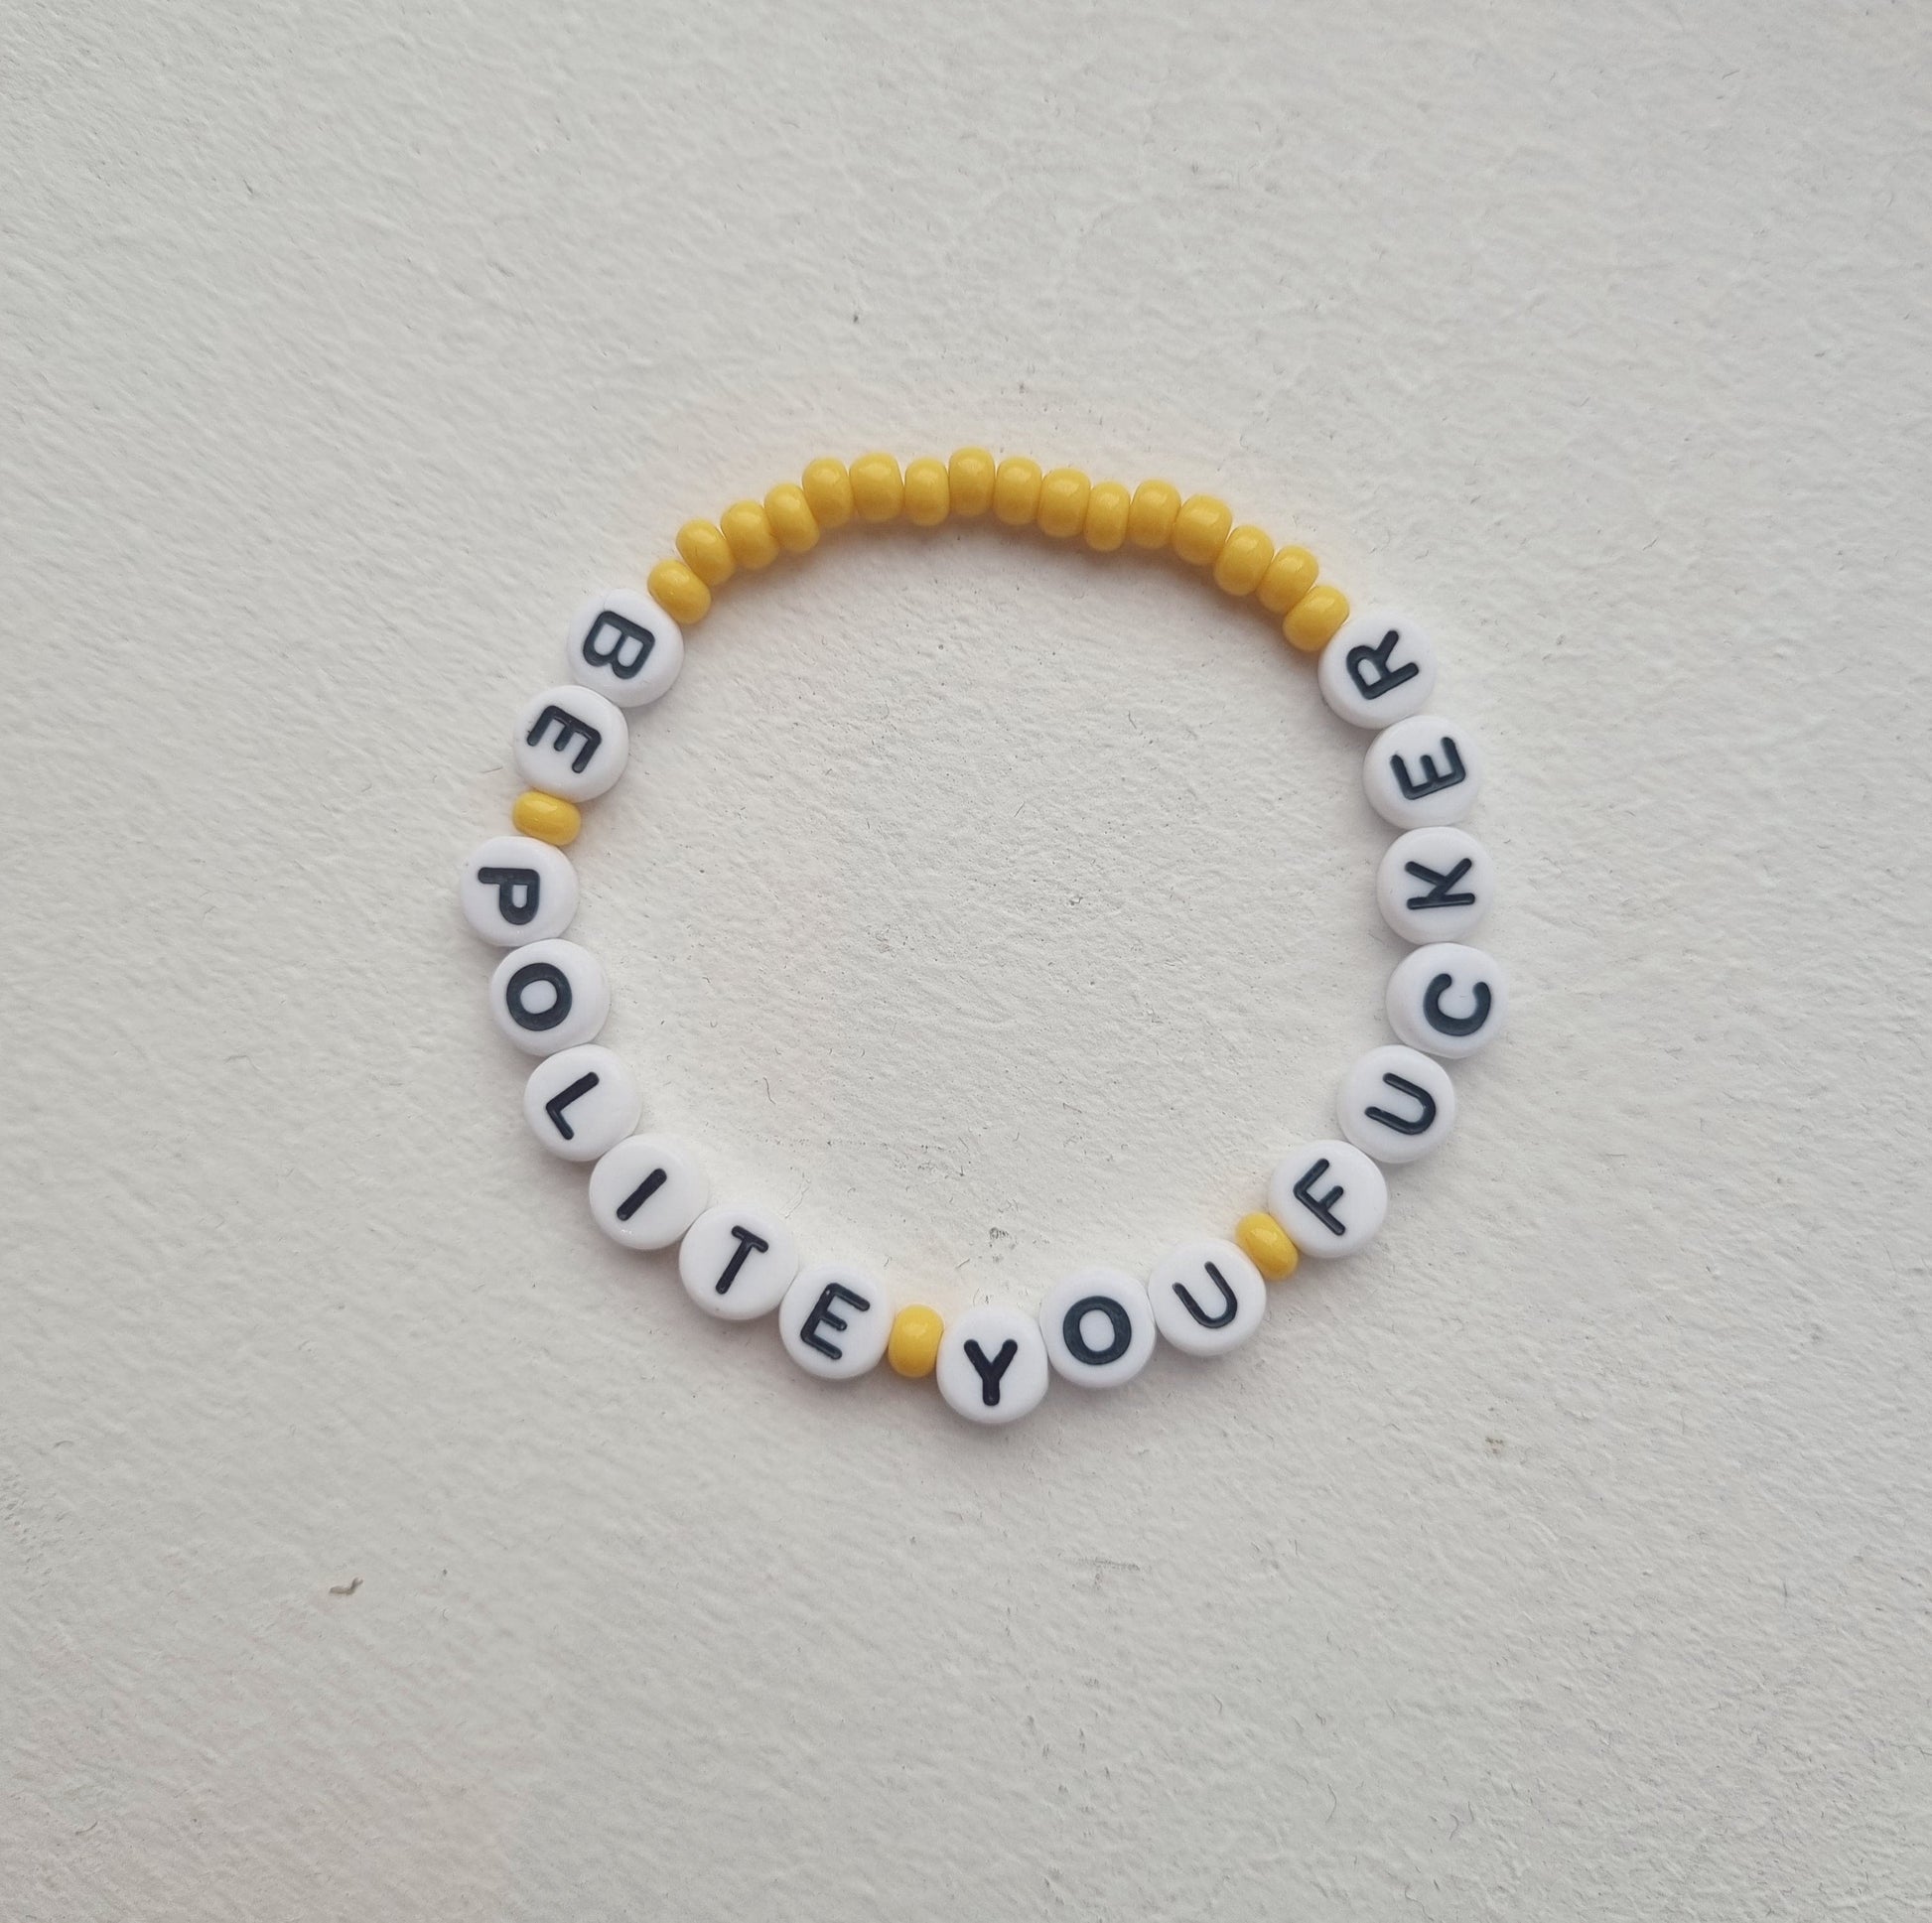 VAGPWR Bracelet Yellow Bracelet - Be Polite